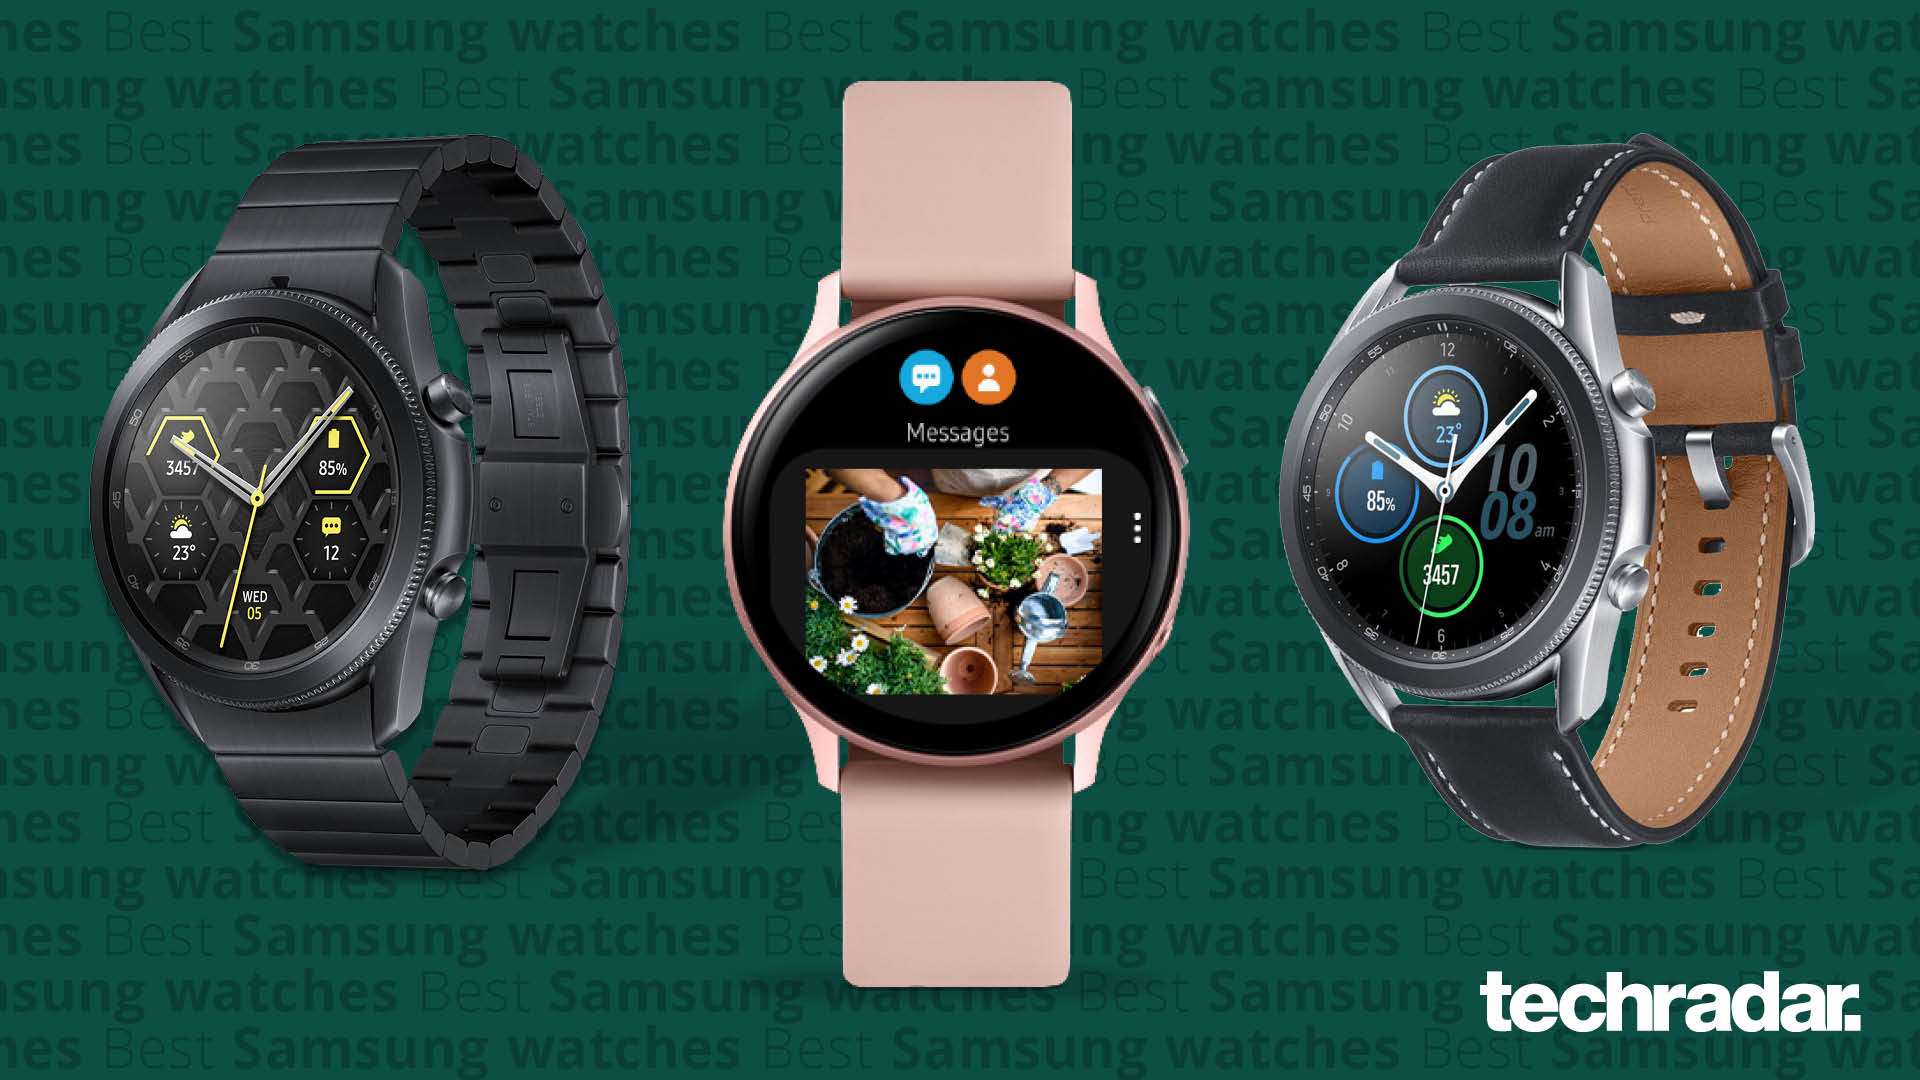 Theseus Geneeskunde Hertog Best Samsung watch 2022: our top Tizen smartwatch choices | TechRadar